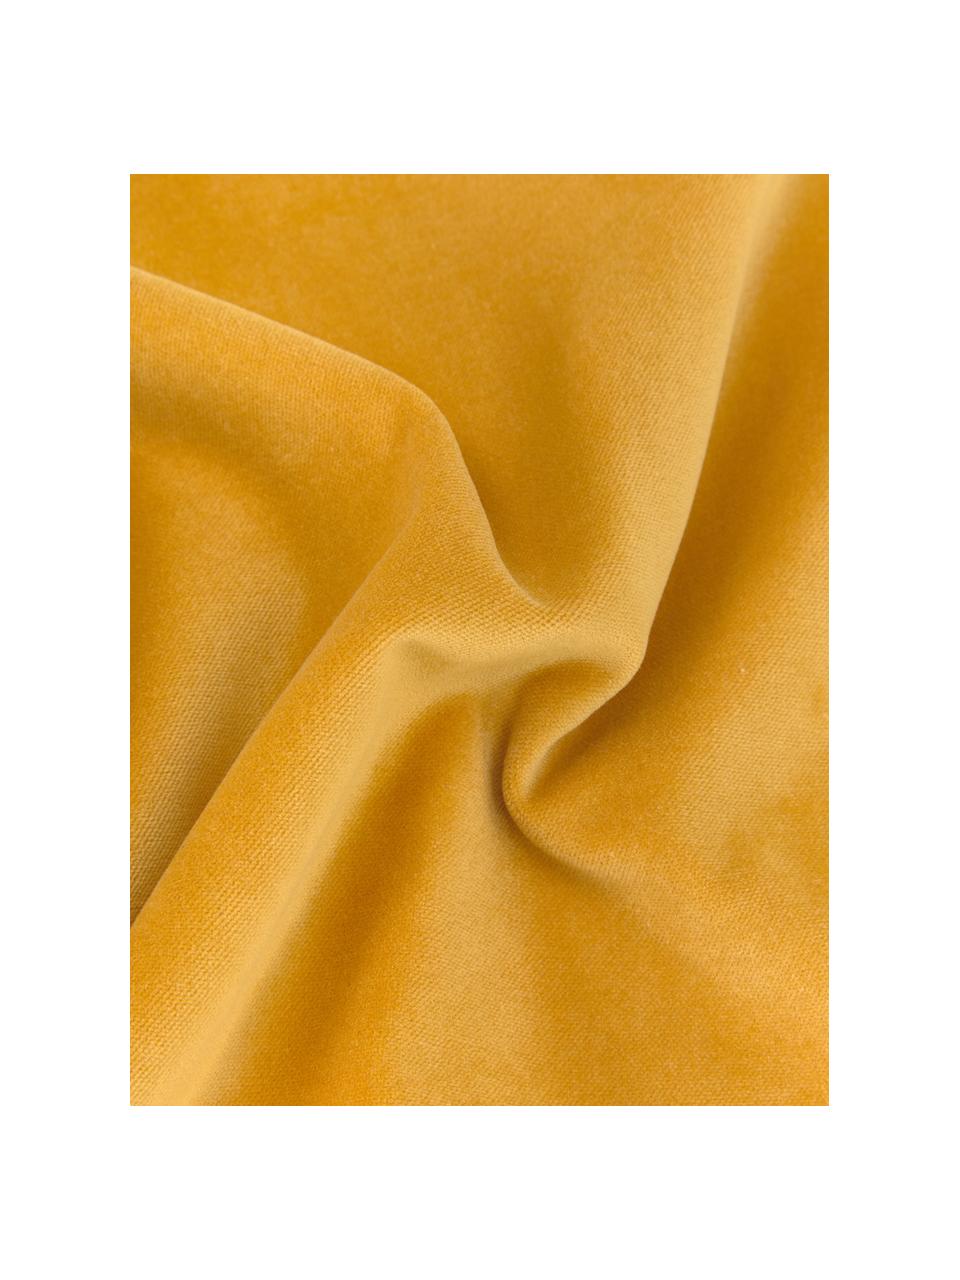 Housse de coussin rectangulaire velours jaune ocre Dana, 100 % velours de coton, Ocre, larg. 30 x long. 50 cm